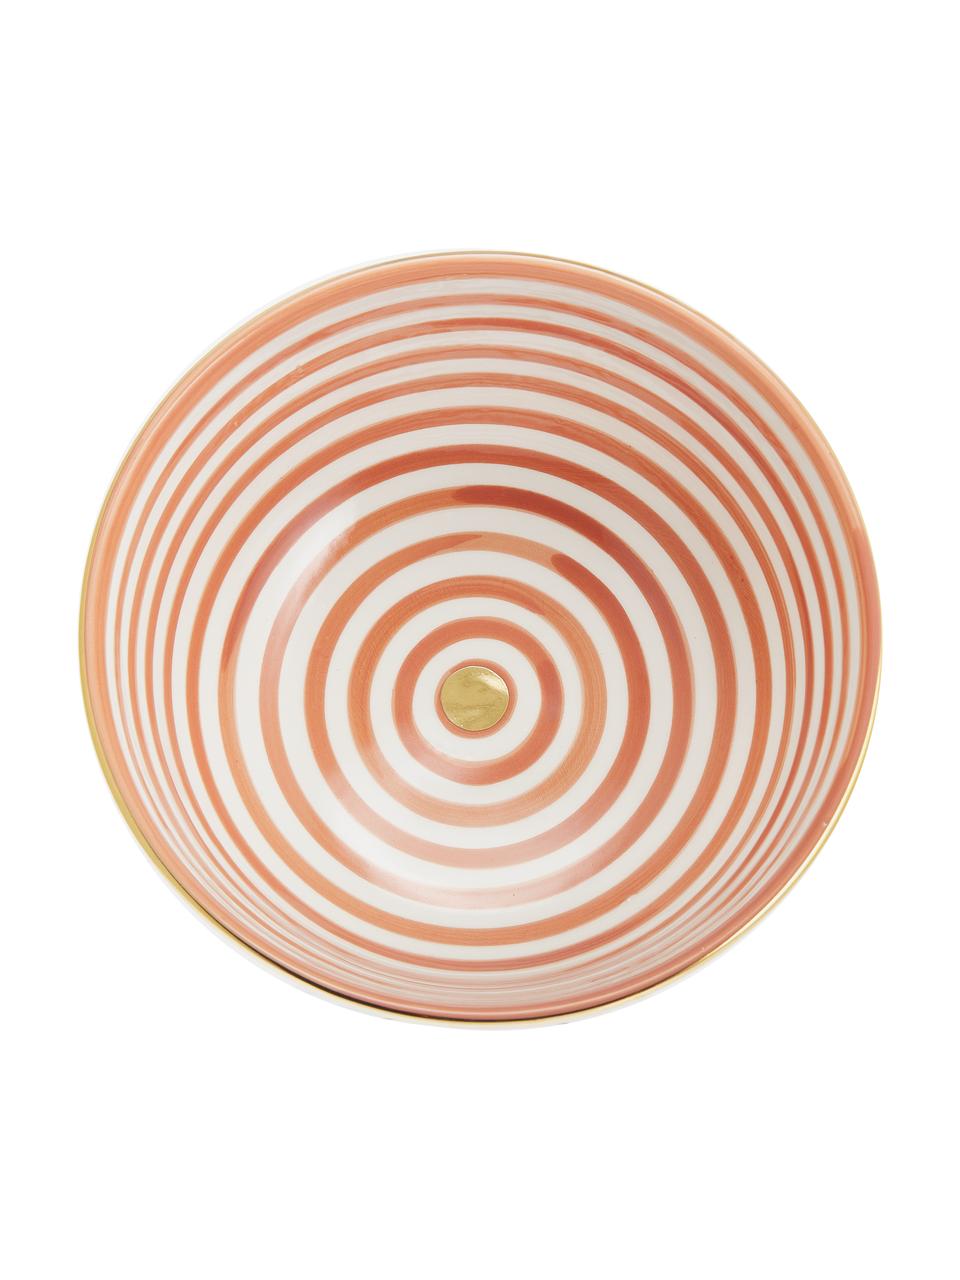 Saladier céramique marocaine artisanale Couleur, Ø 25 cm, Orange, couleur crème, or